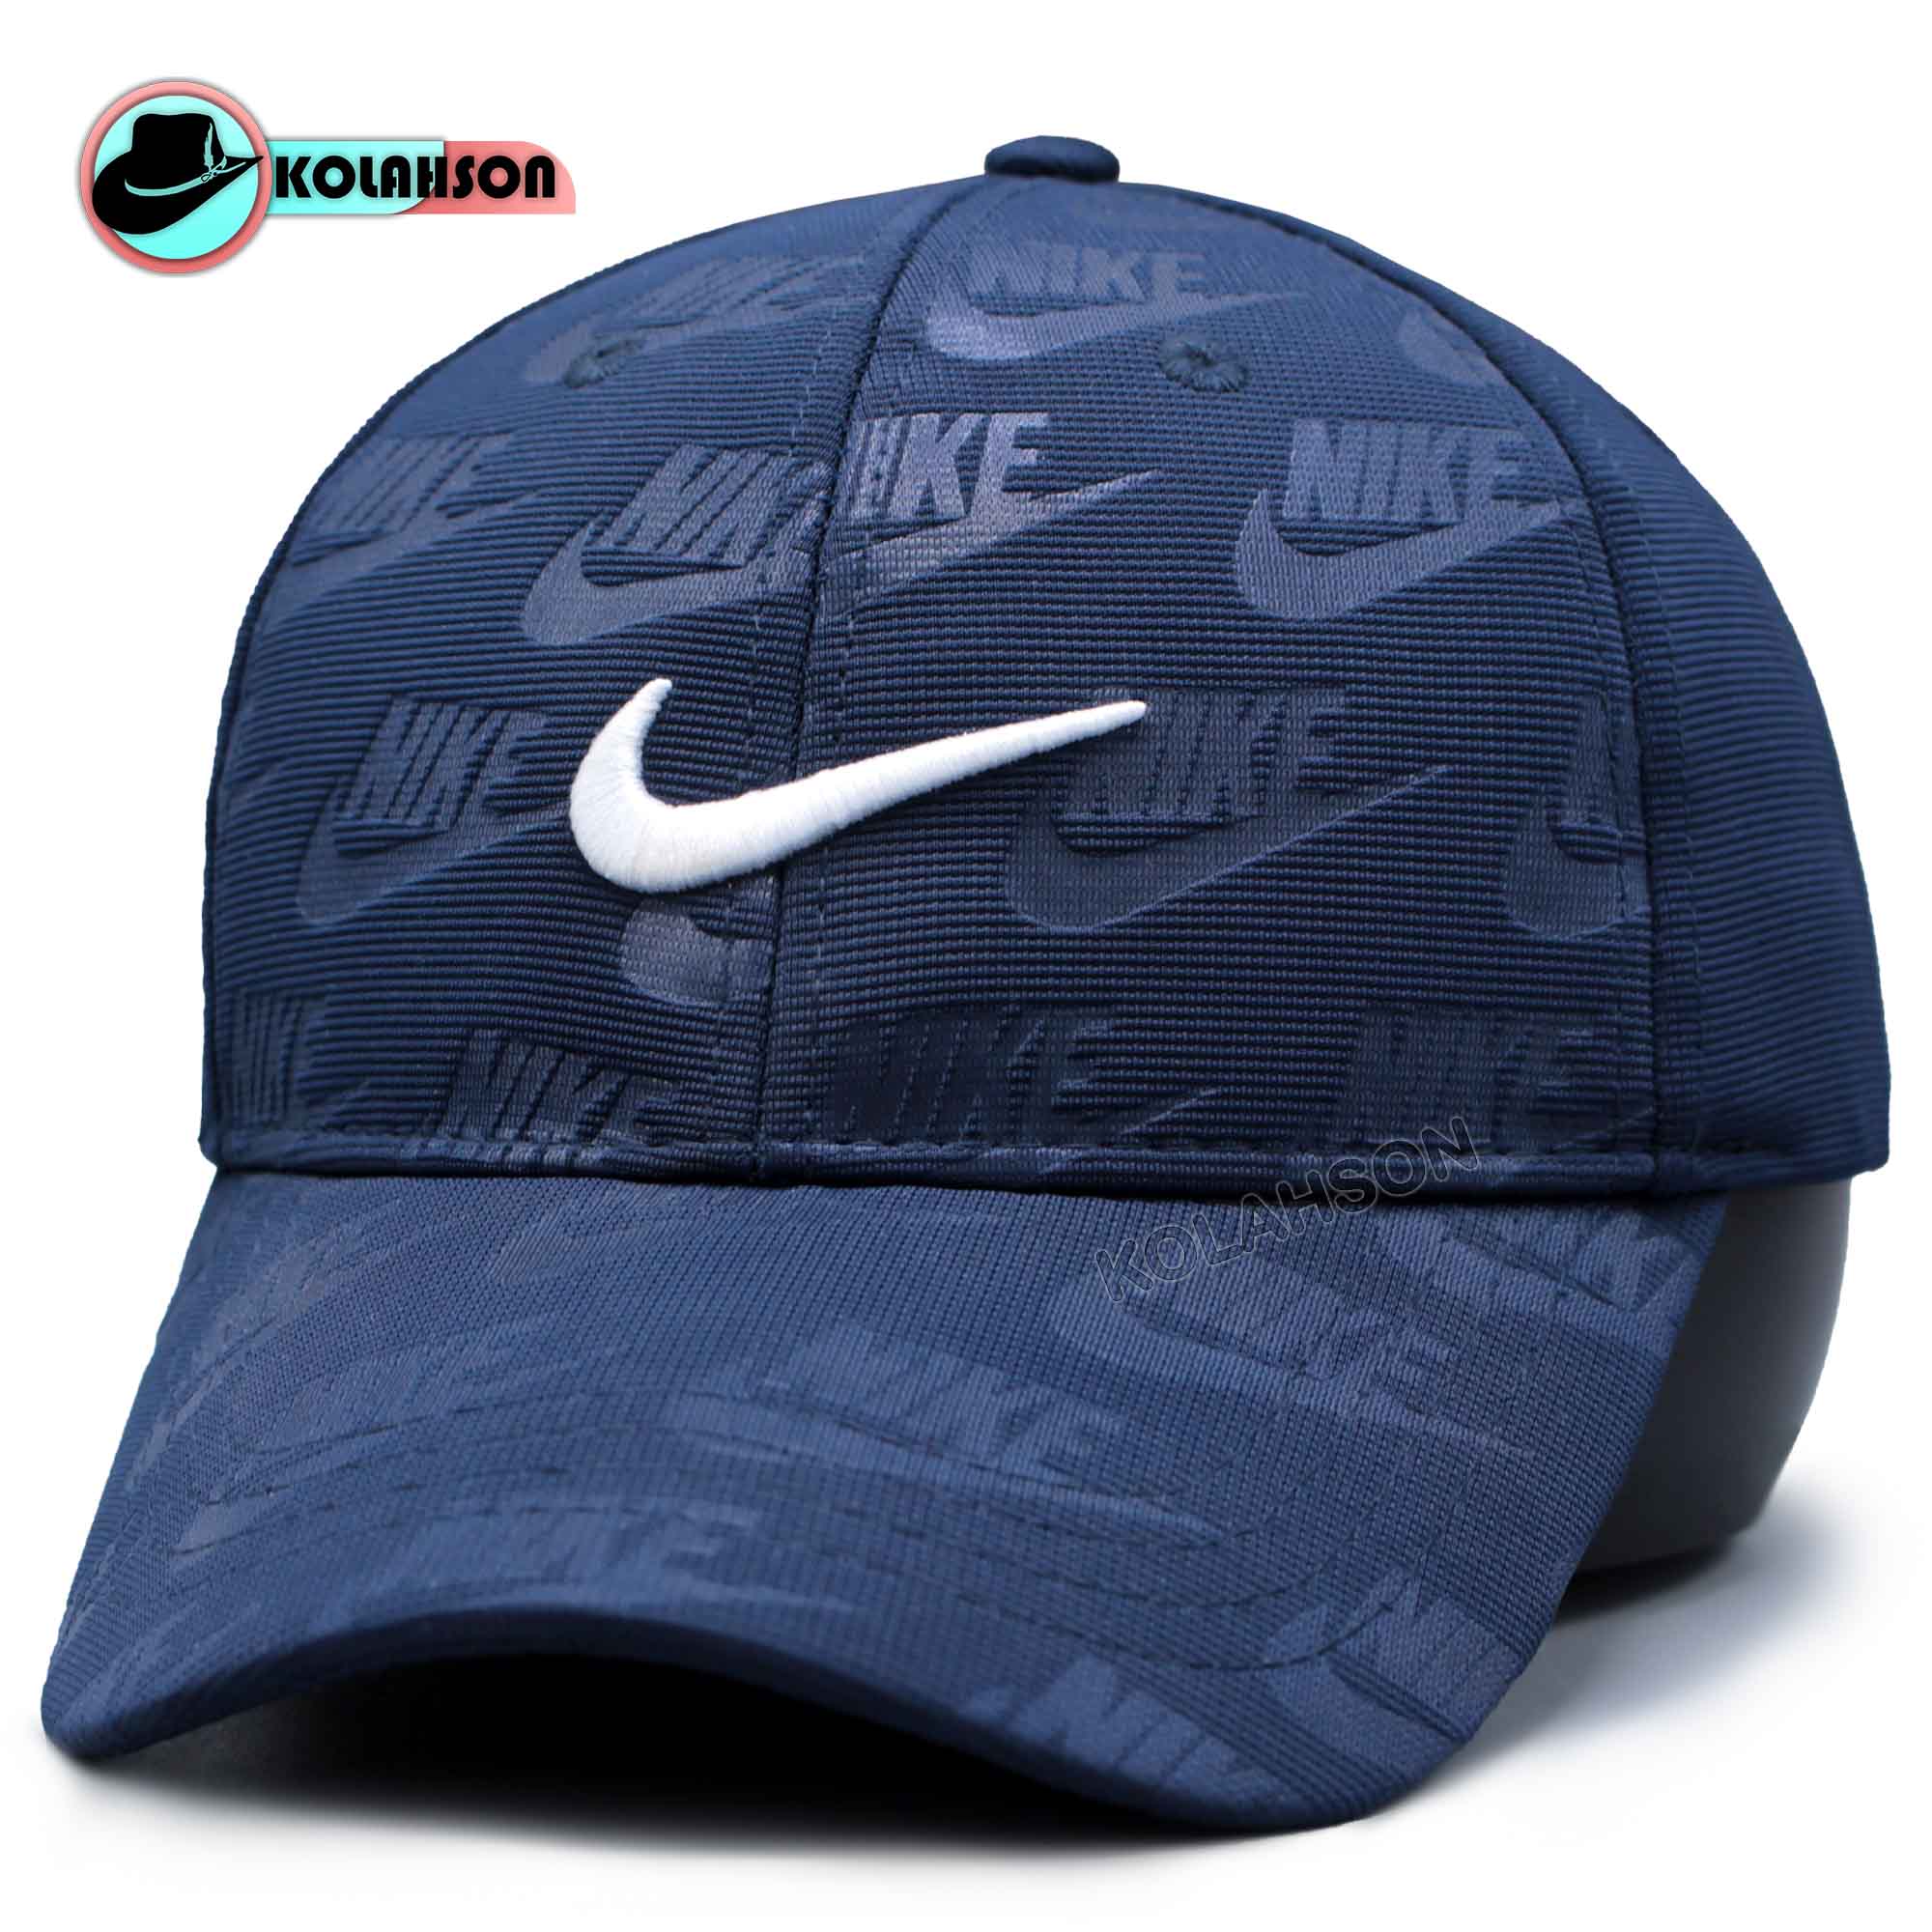 کلاه بیسبالی طرح Nike ورزشی